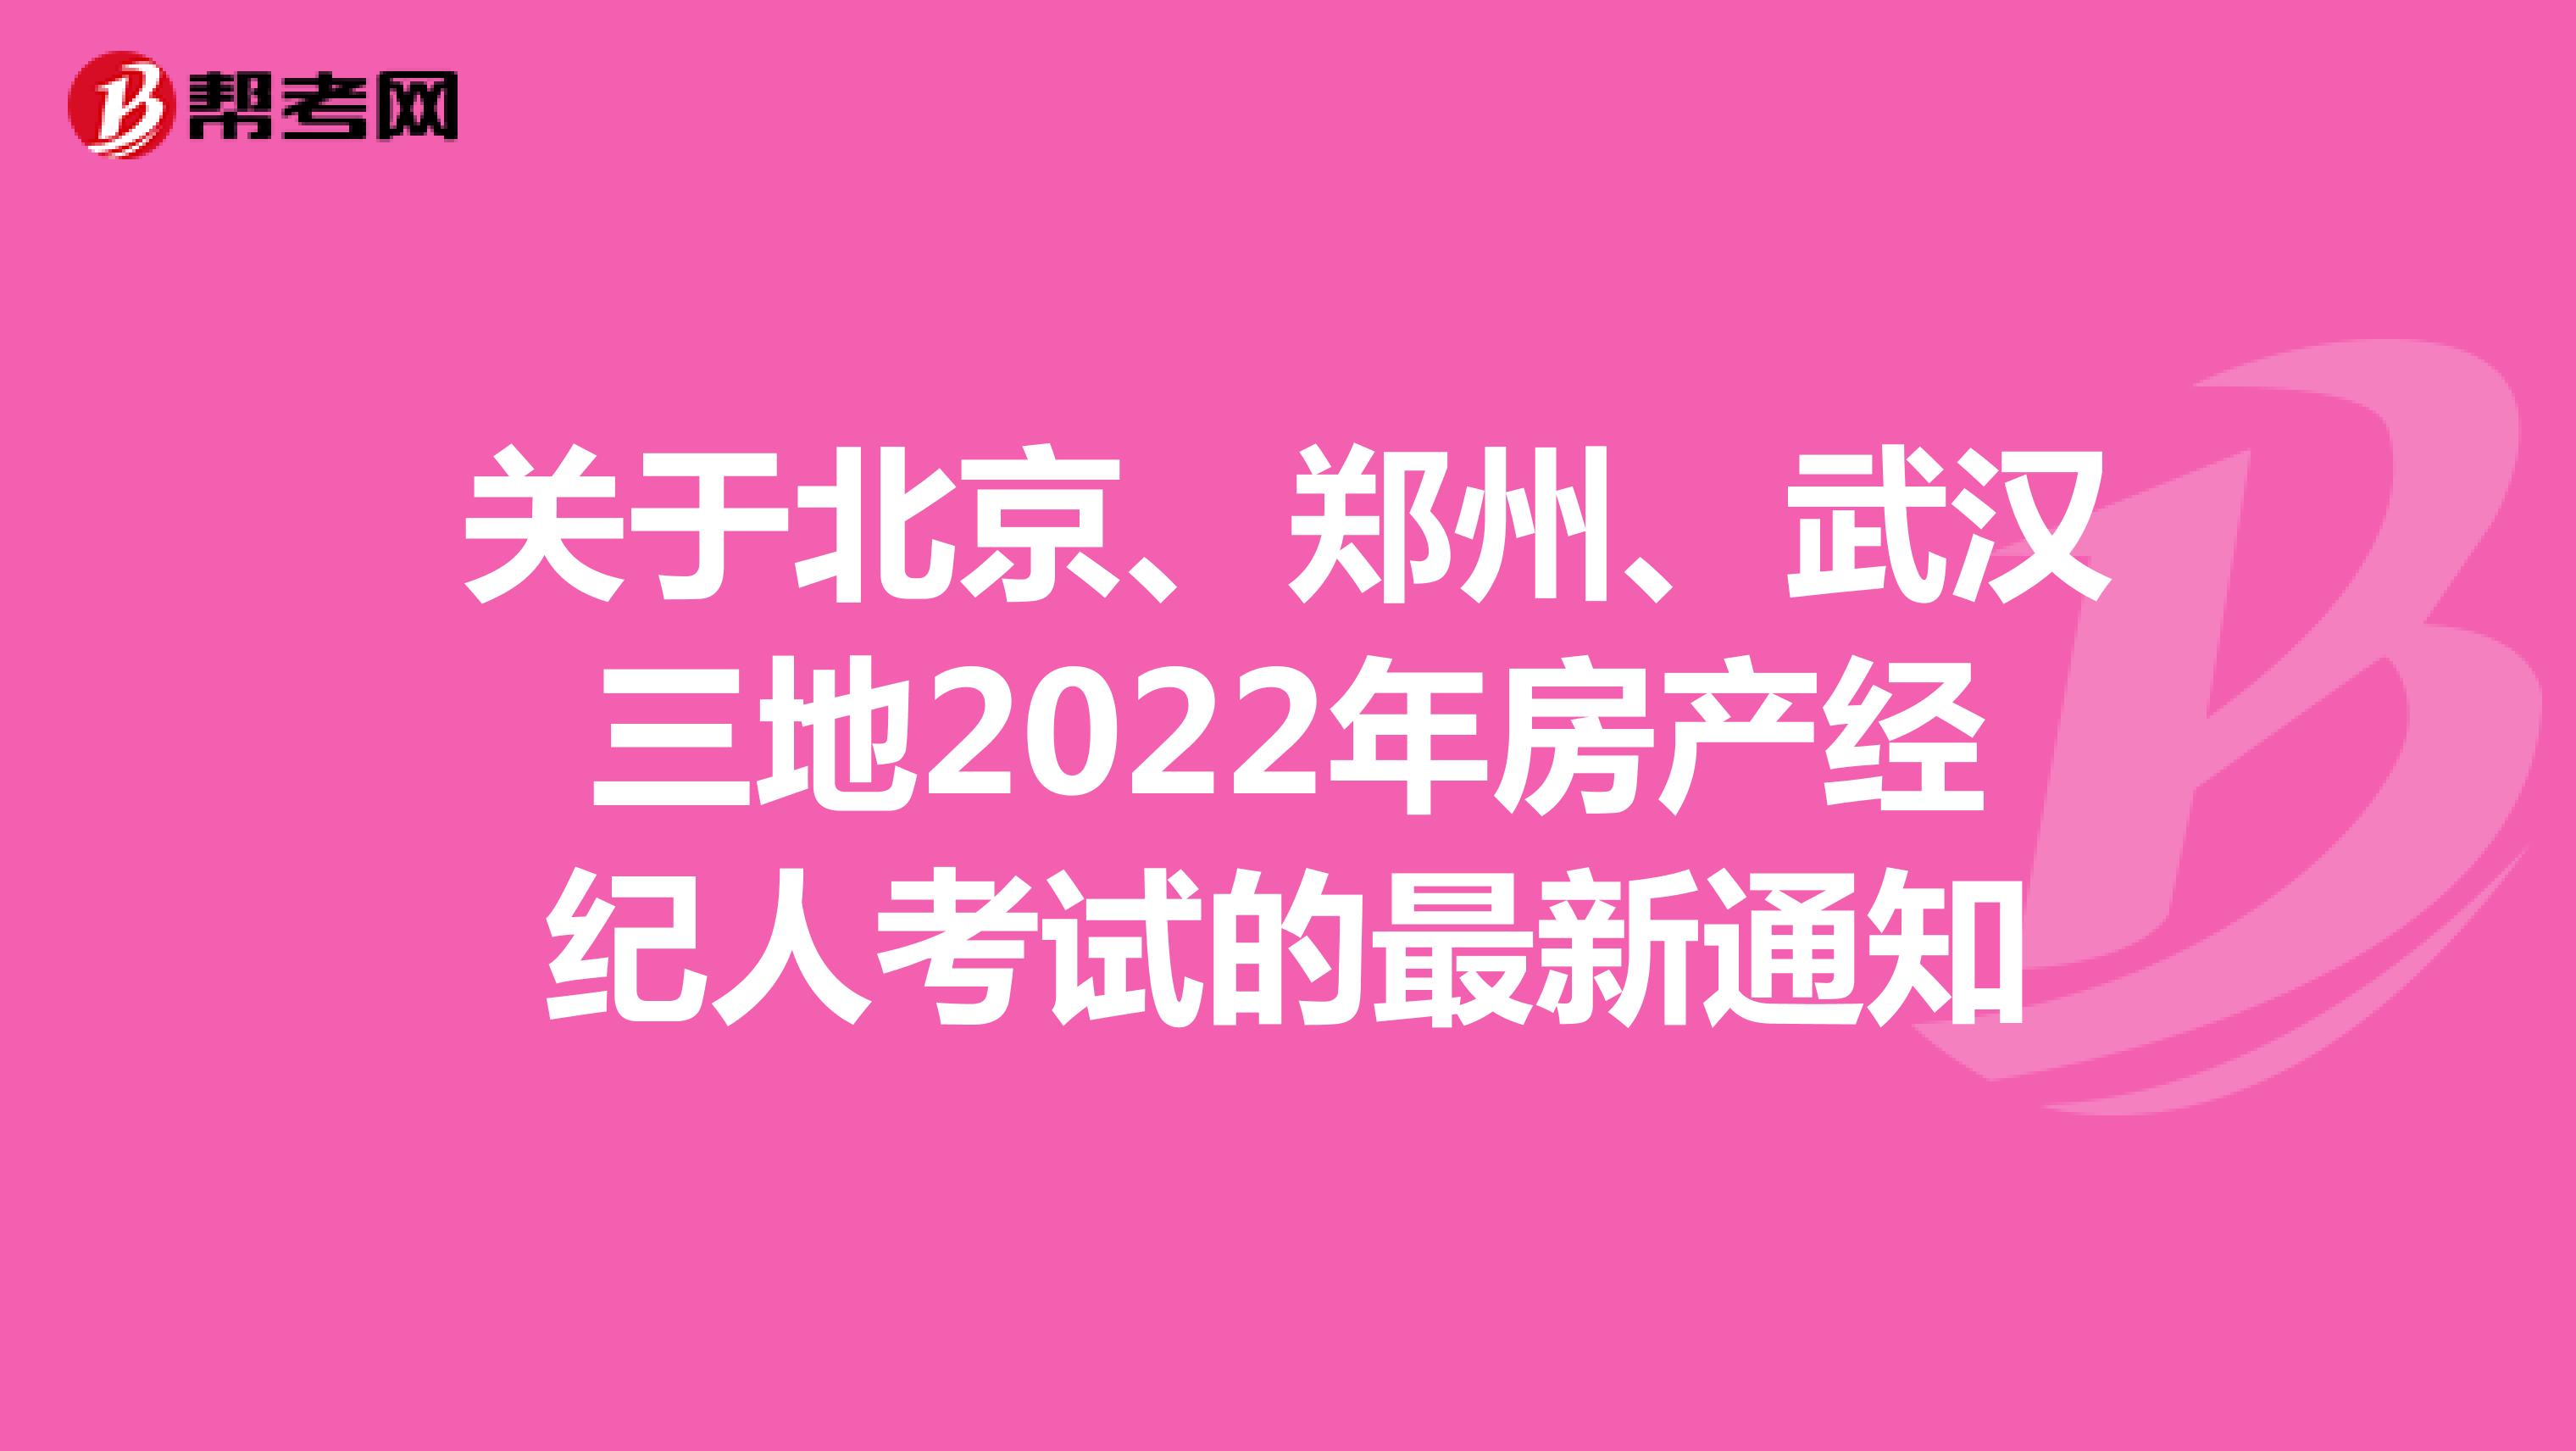 关于北京、郑州、武汉三地2022年房产经纪人考试的最新通知